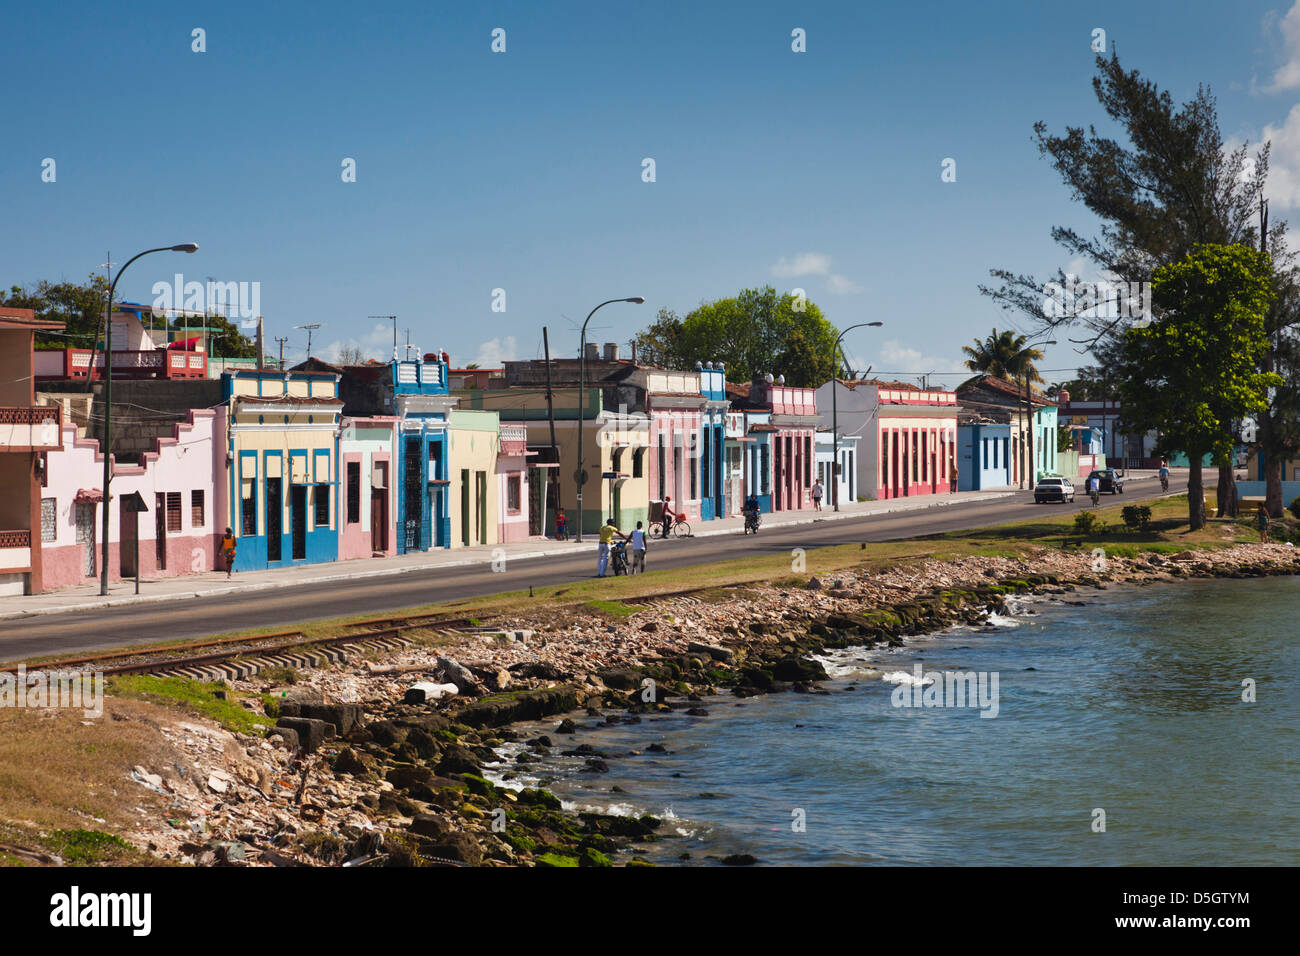 Cuba, province de Matanzas, Matanzas, ville waterfront, Bahia de Matanzas Bay Banque D'Images